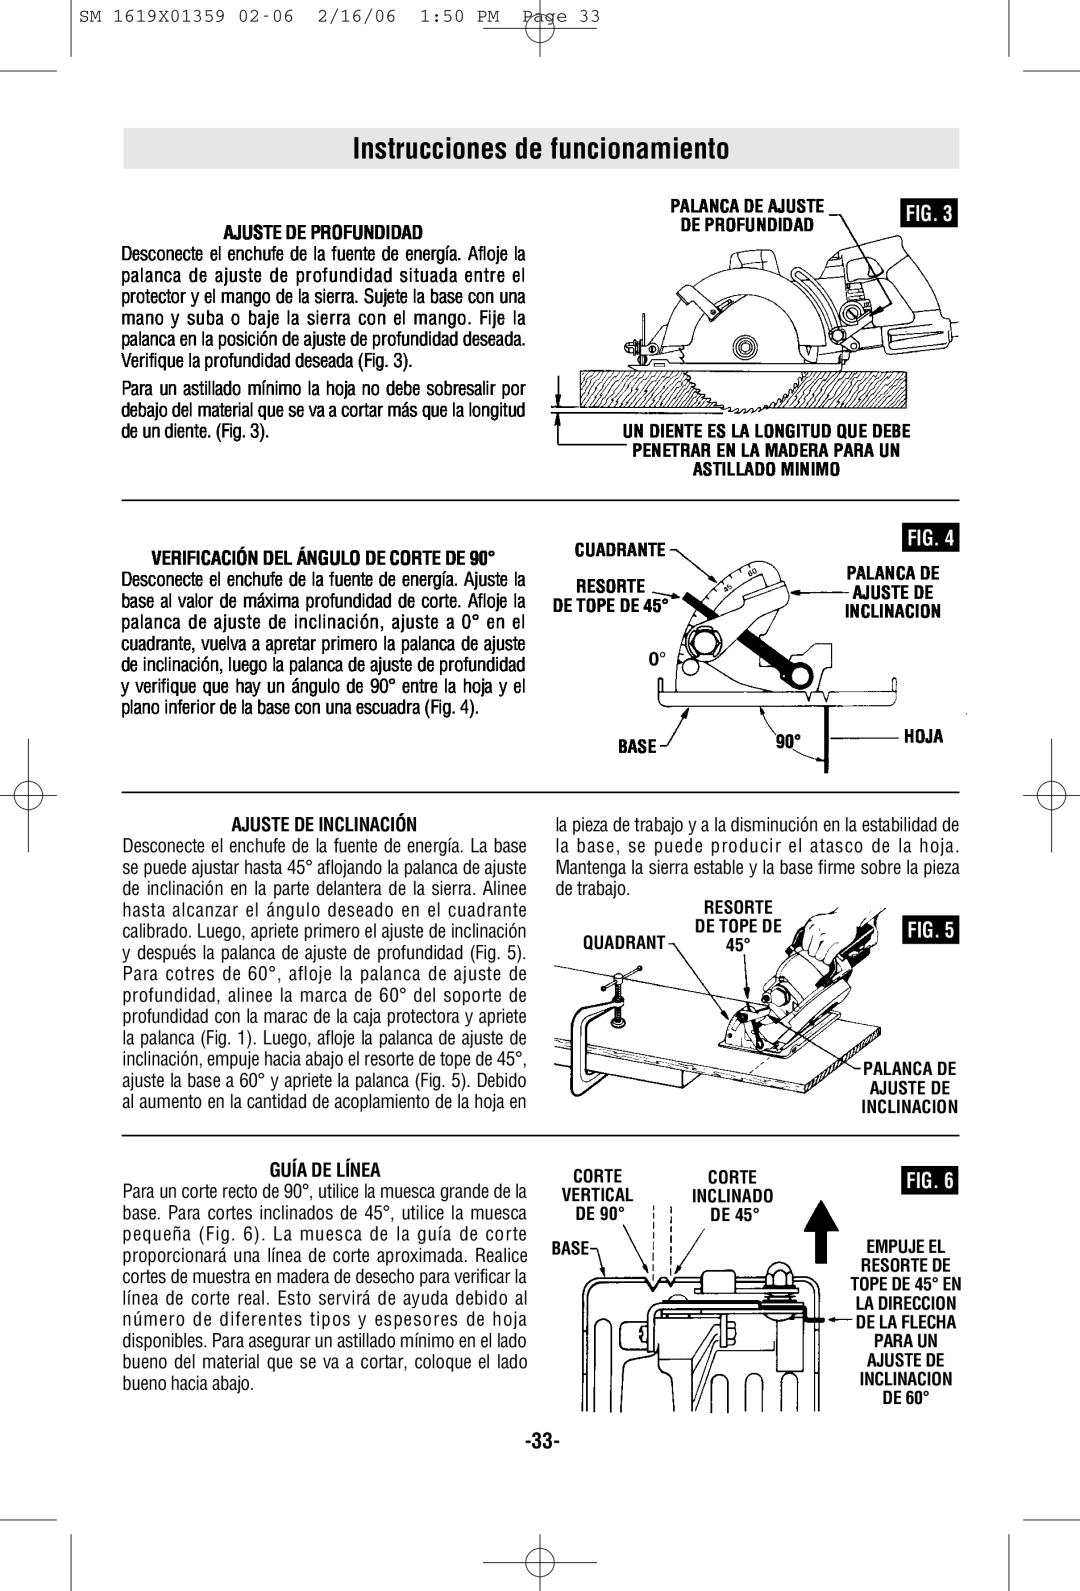 Skil HD5860 manual Instrucciones de funcionamiento, Ajuste De Profundidad, Ajuste De Inclinación, Guía De Línea 